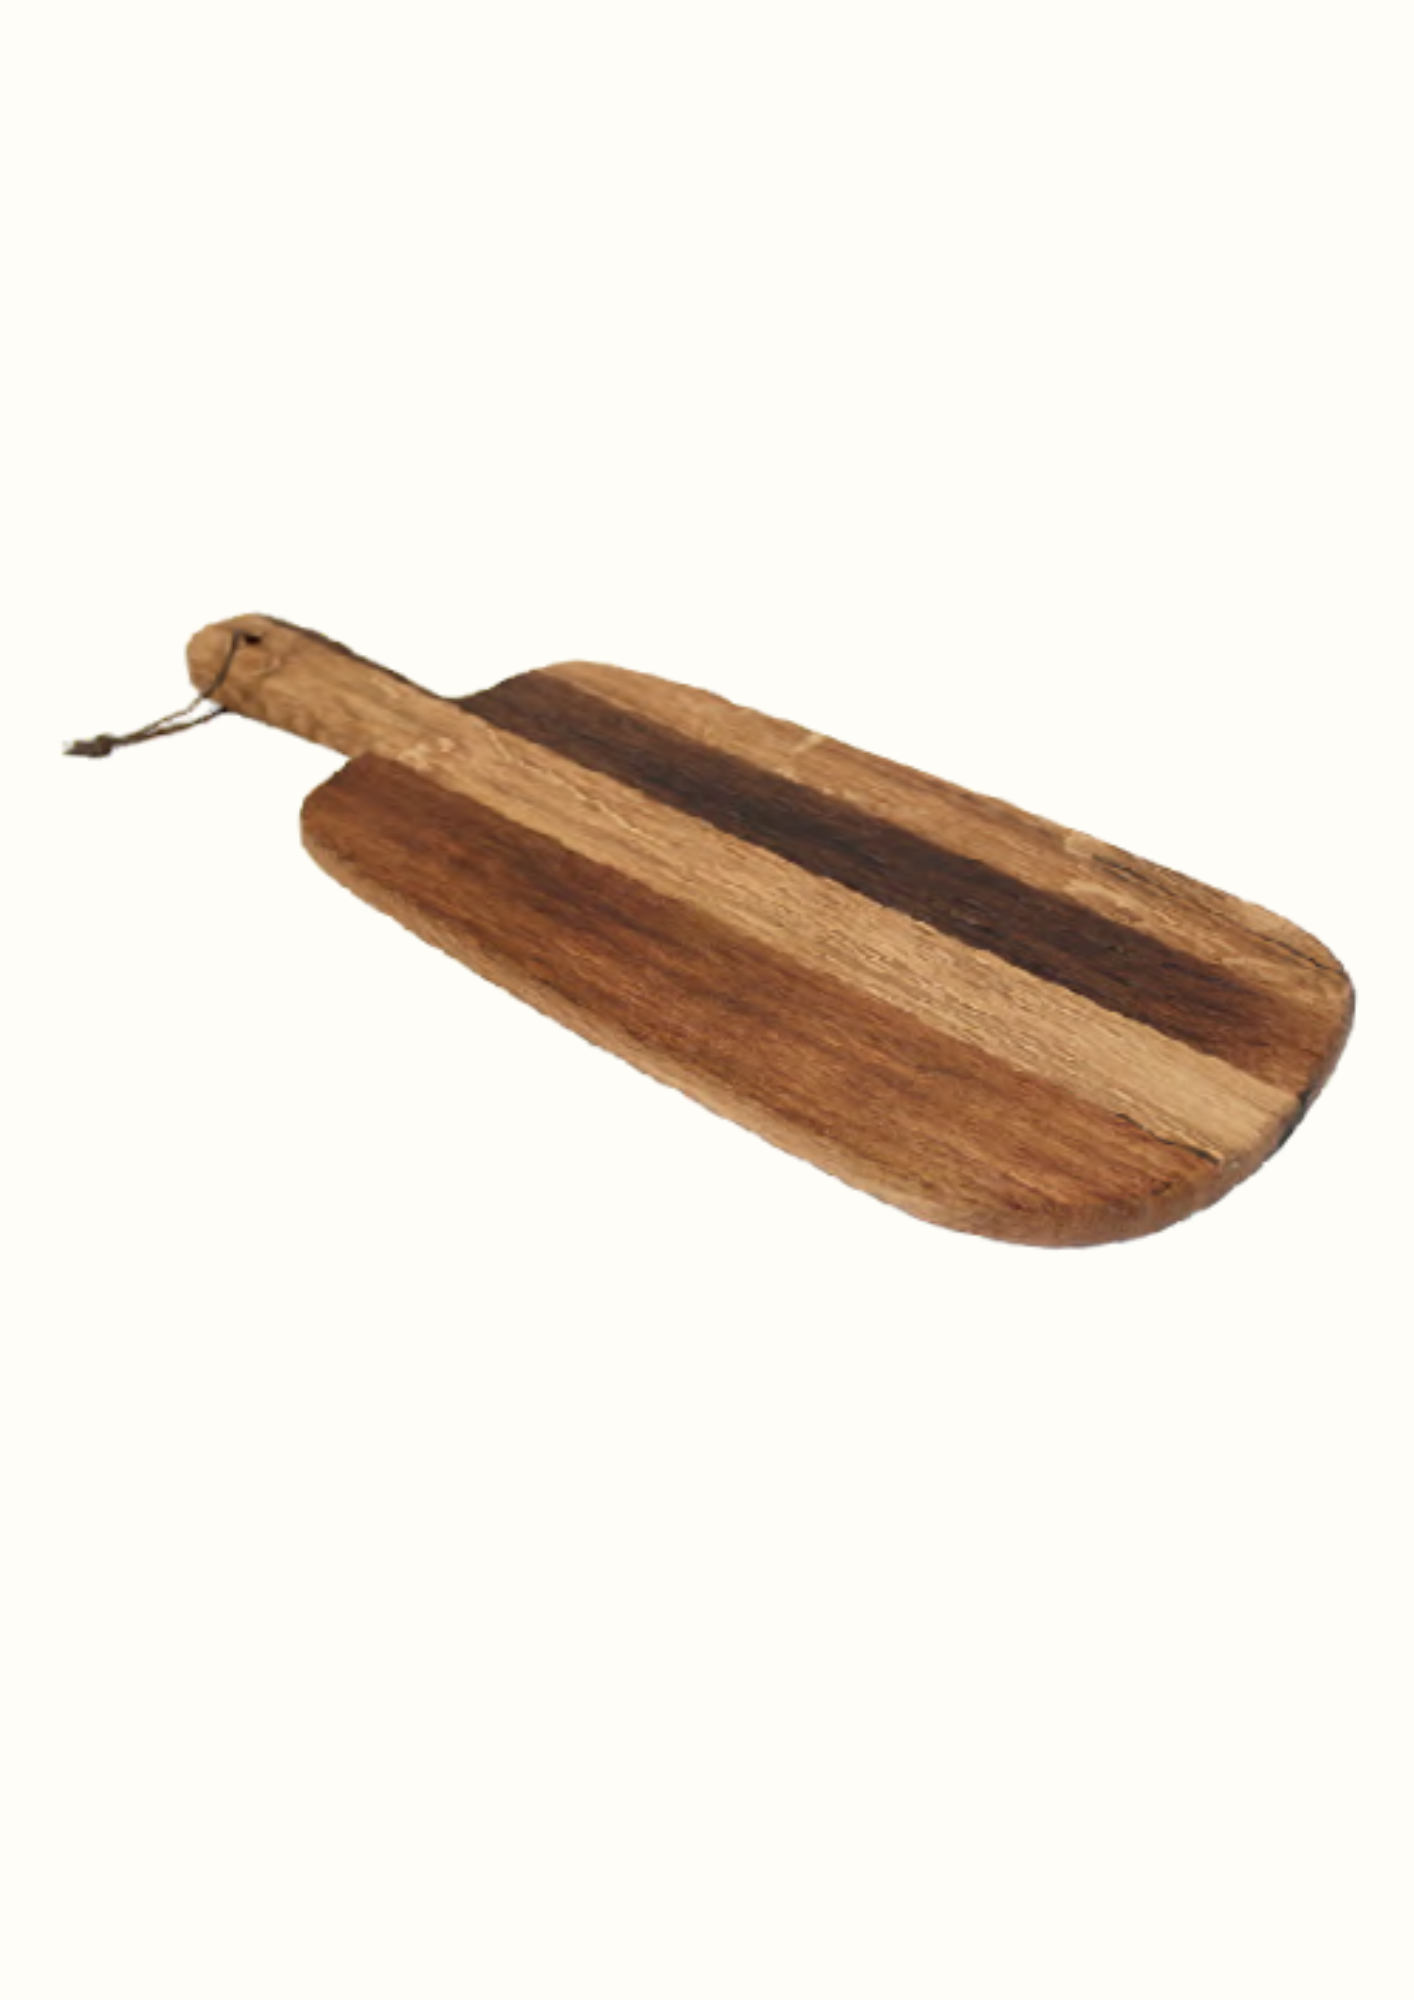 Kiewiet Wooden Platter with Handle